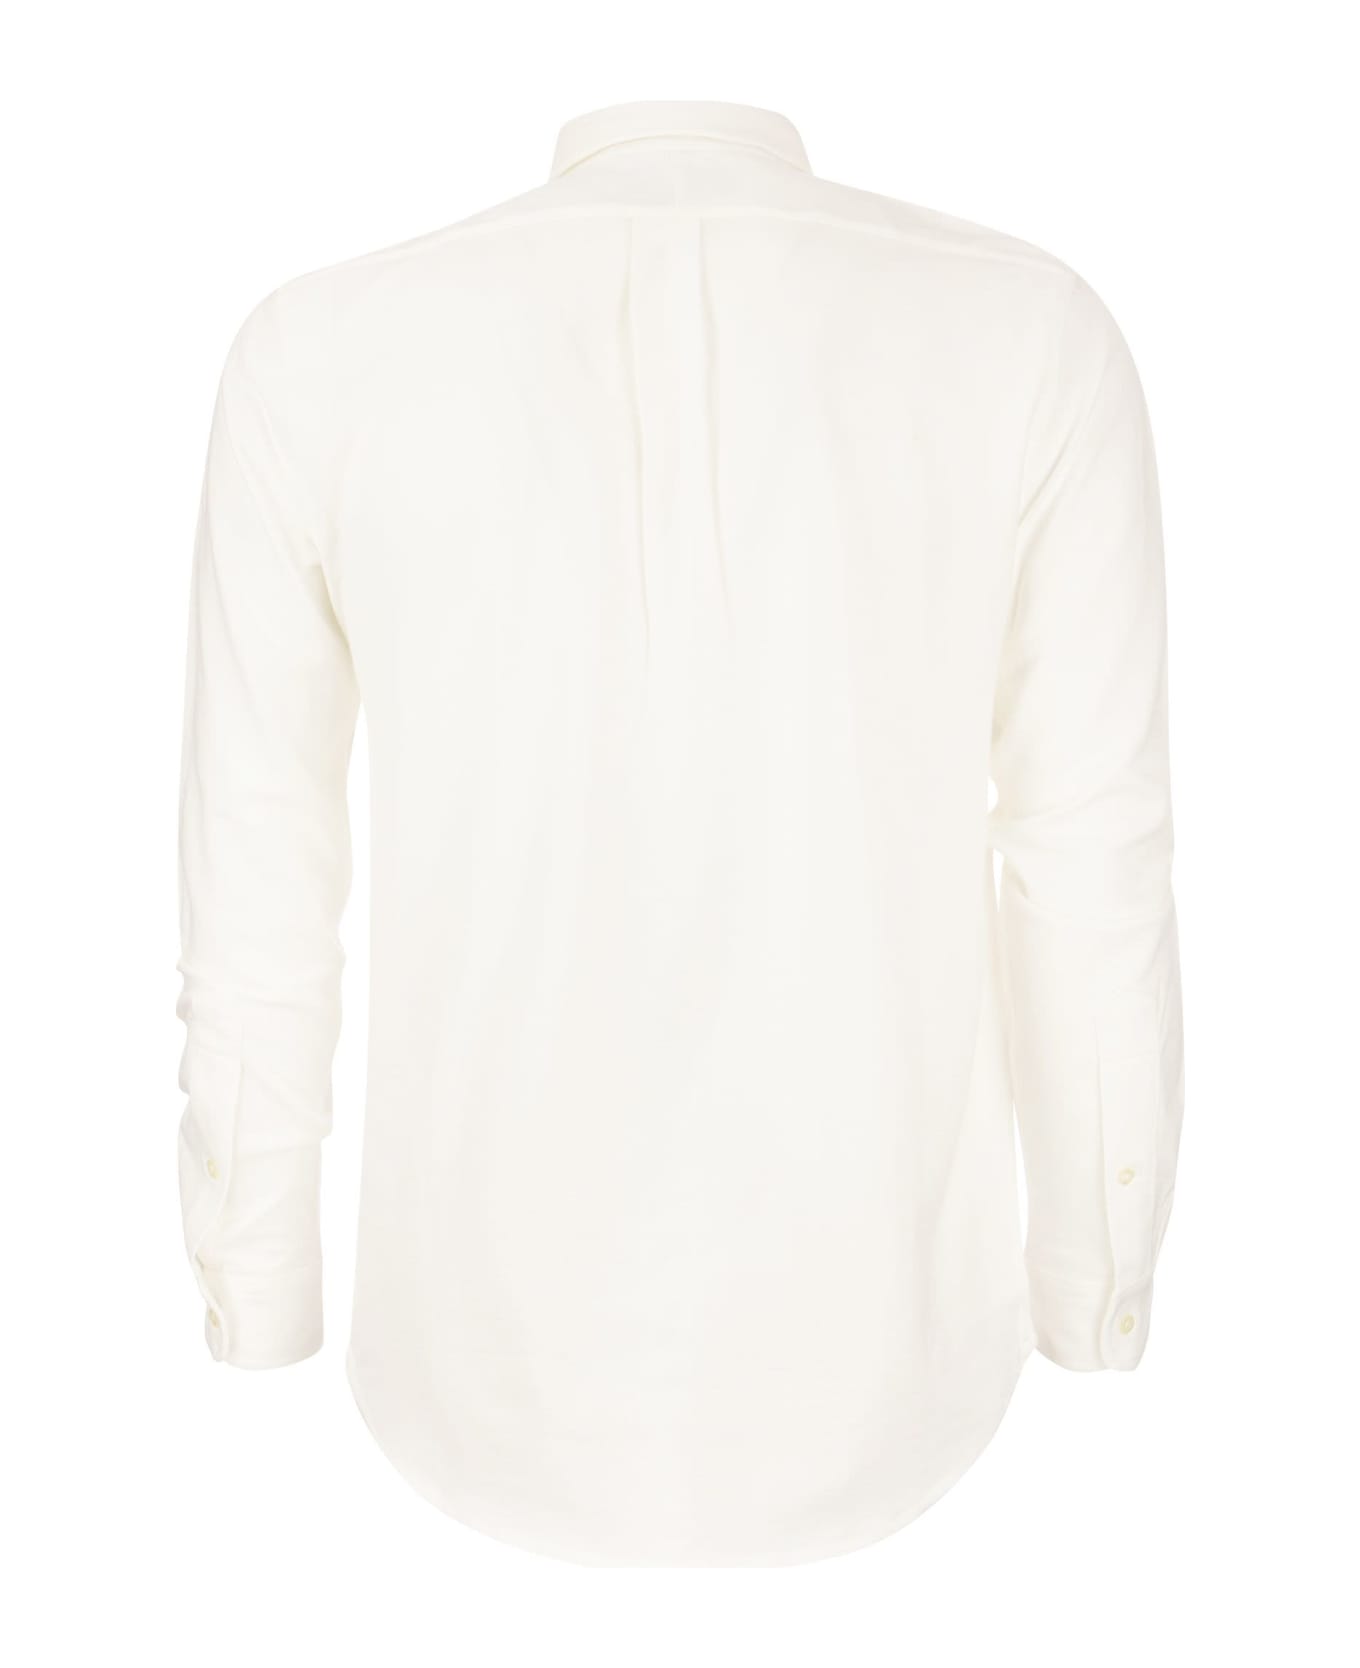 Polo Ralph Lauren Ultralight Pique Shirt - White シャツ